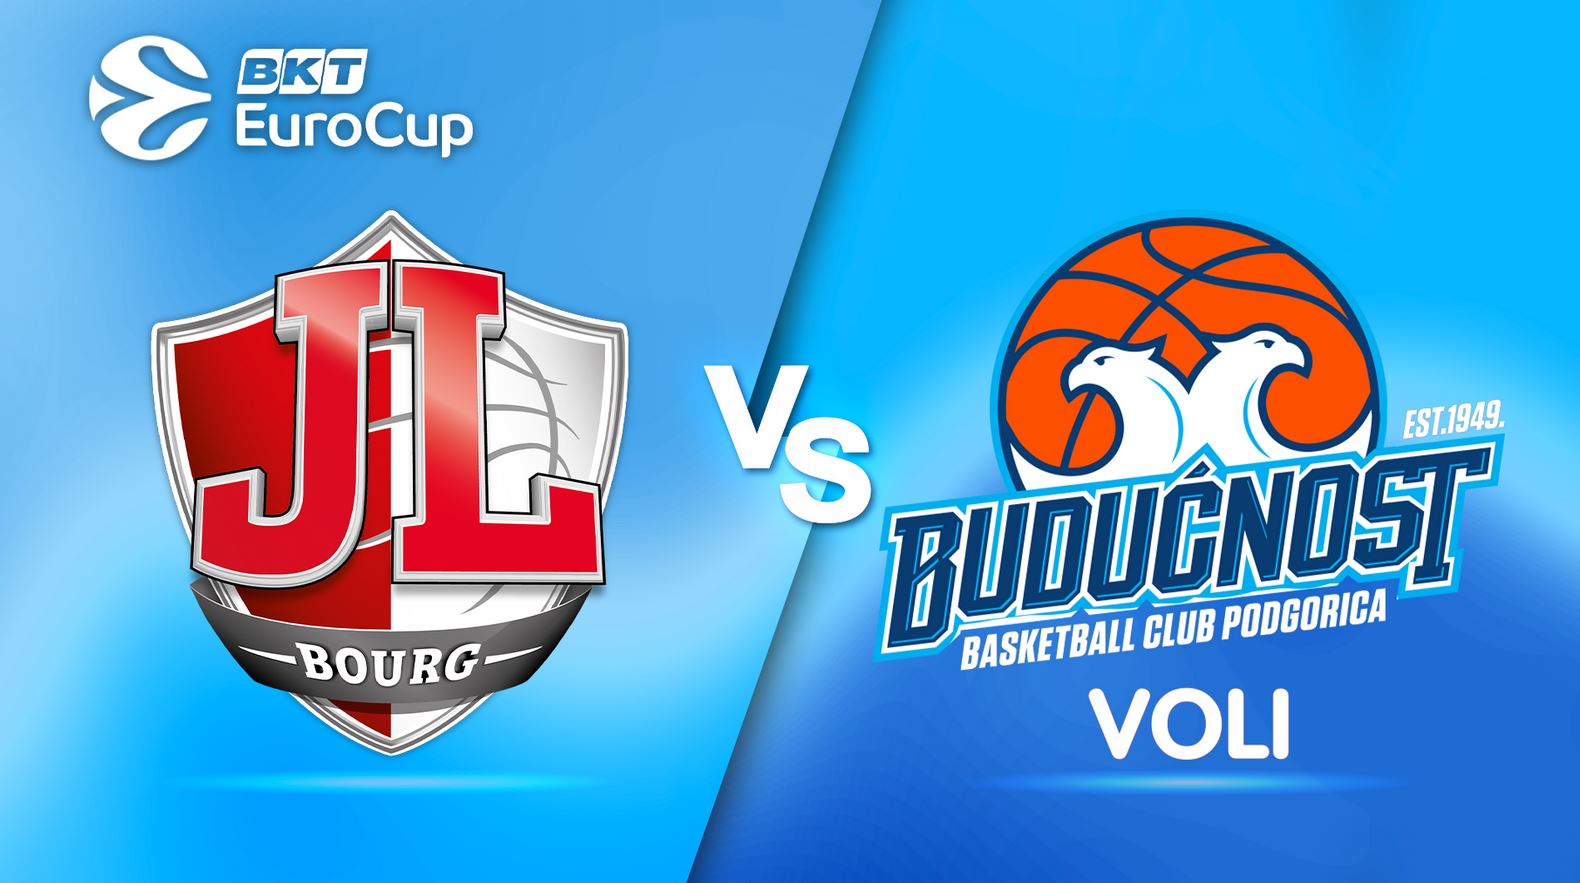 JL Bourg en Bresse / Buducnost Pogdorica (TV/Streaming) Sur quelle chaîne et à quelle heure suivre la rencontre d'Eurocup ?